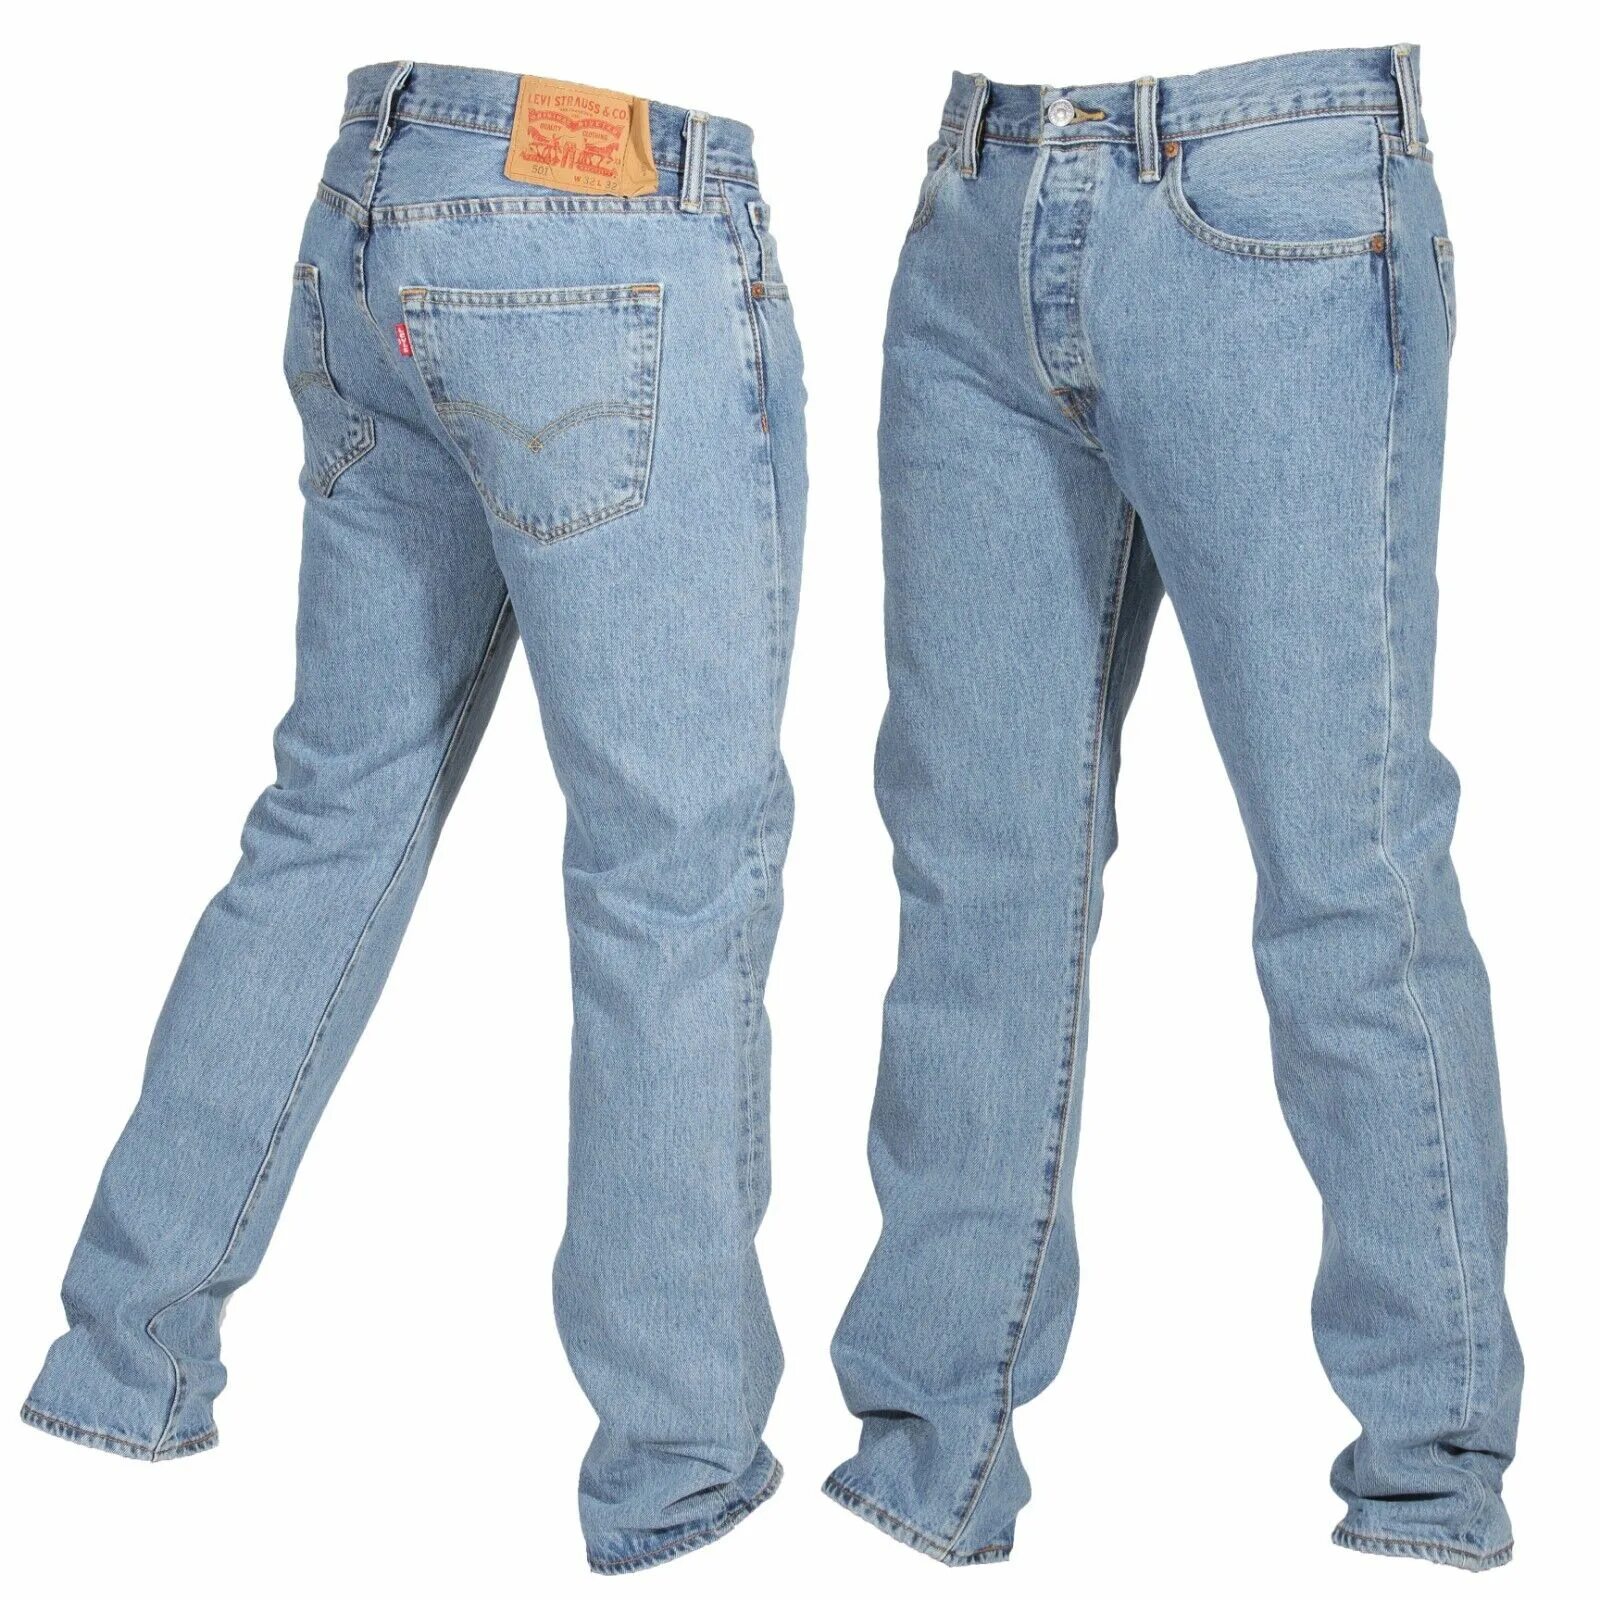 Levis 501 original. Левайс 501. Джинсы левайс 501 мужские. Джинсы 501 Original Fit. Vintage Levis 501 мужские джинсы.